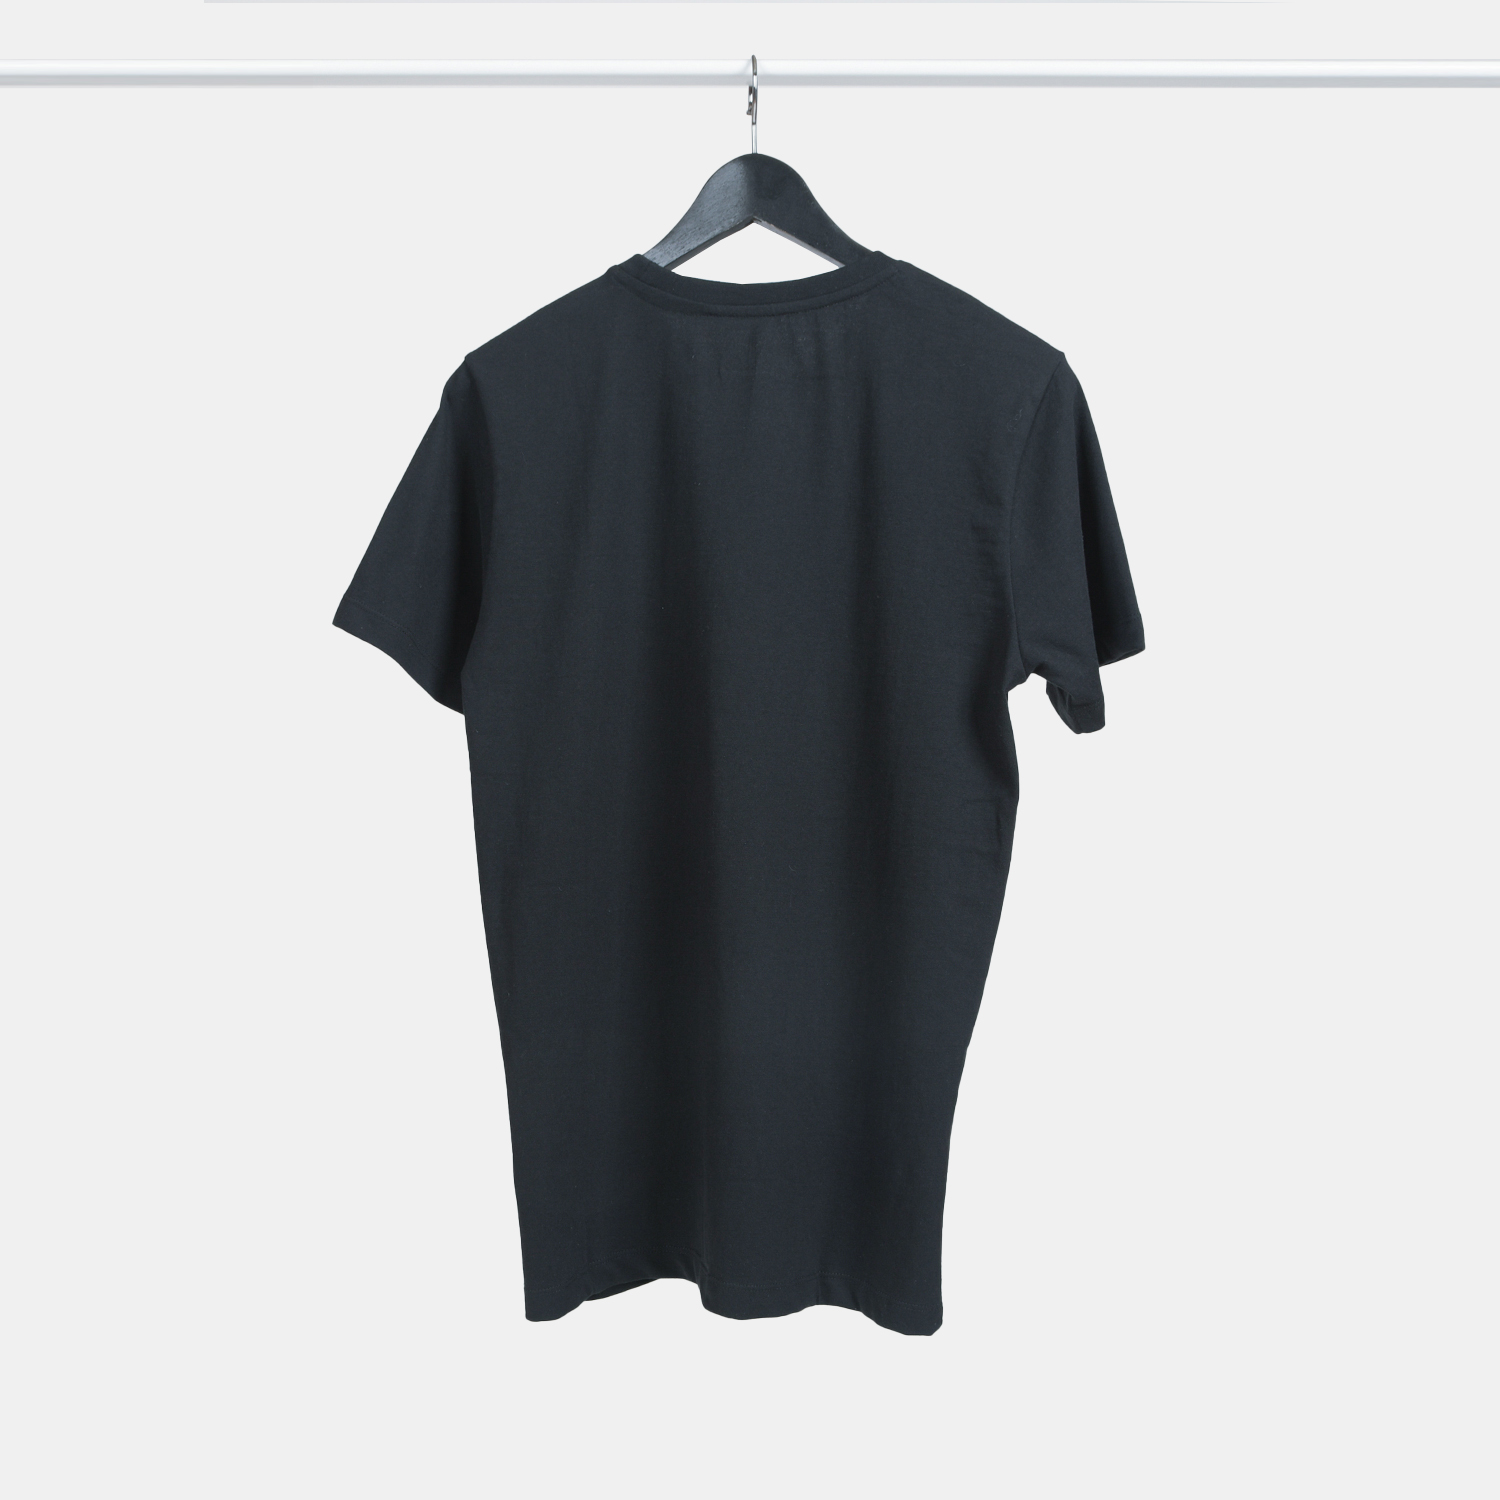 Genanvendt T-shirt i sort til mænd, set bagfra, fra A-PIONEER